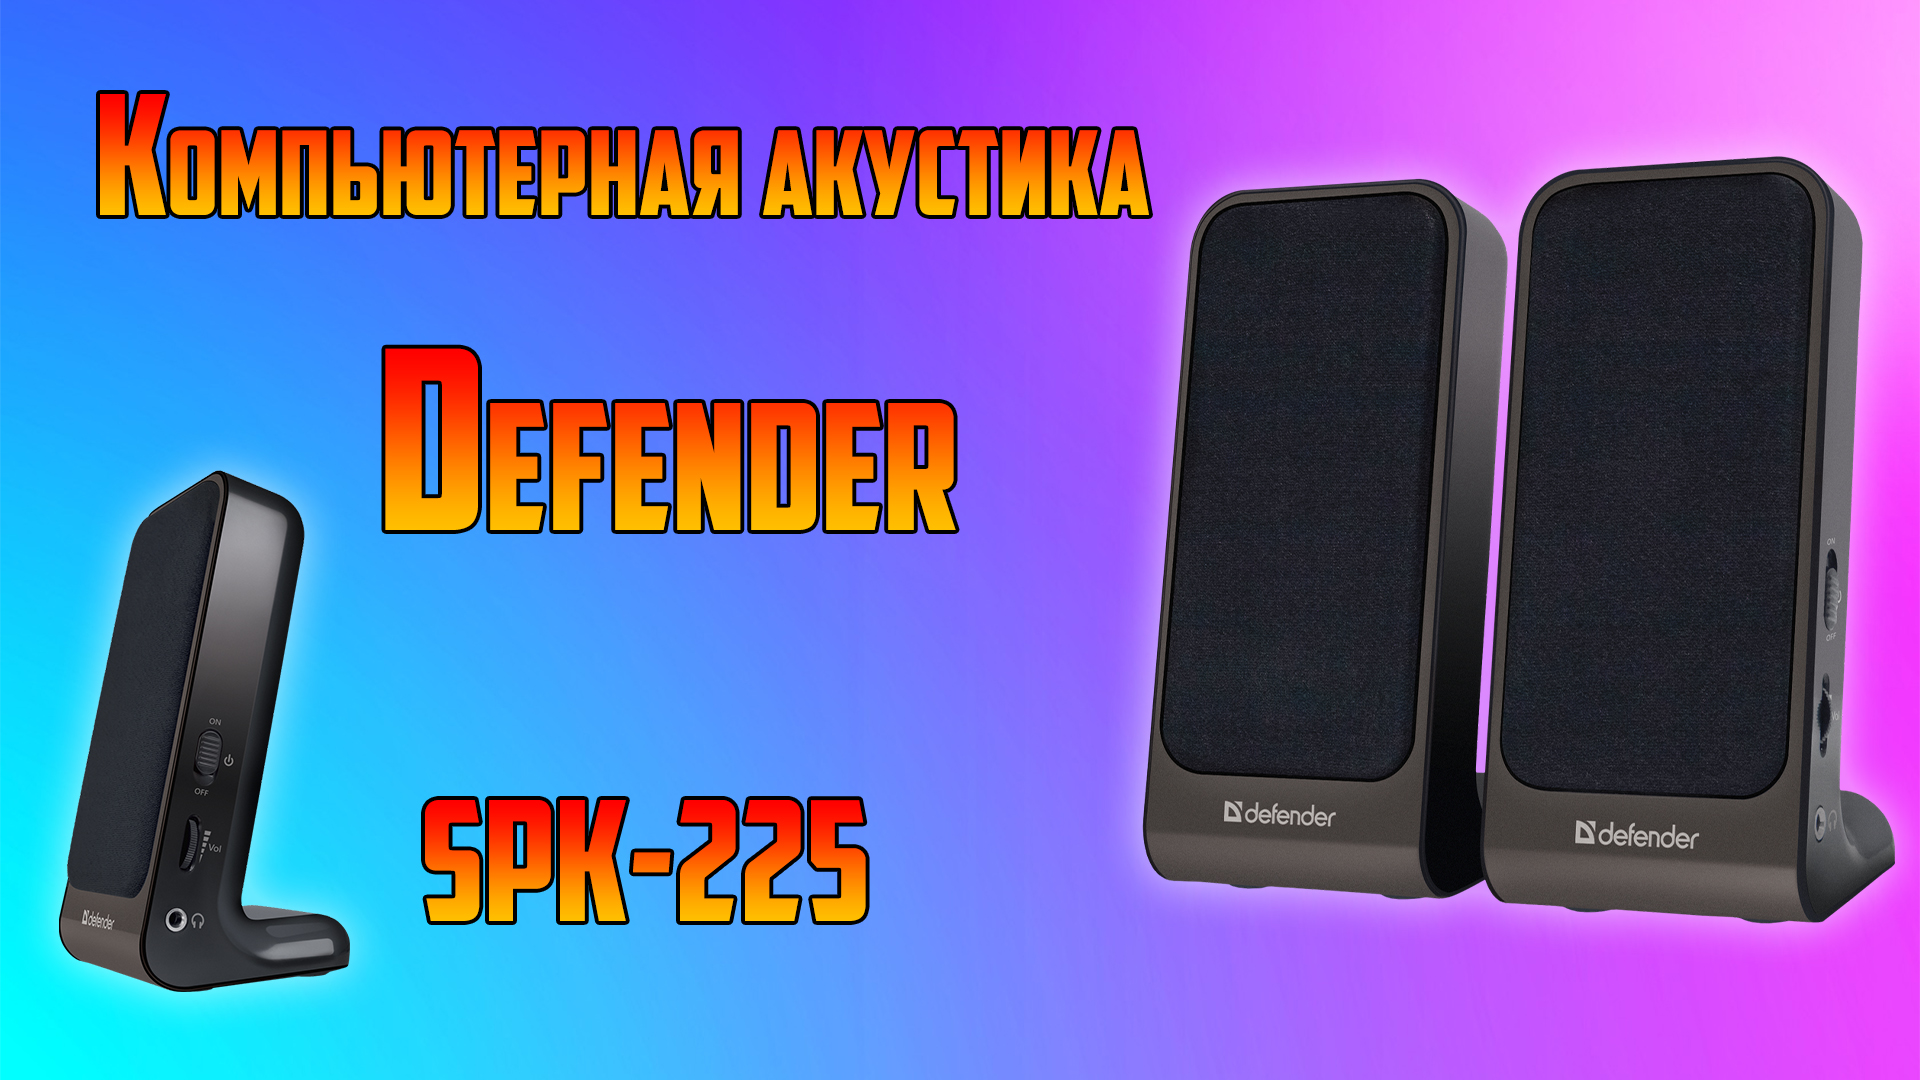 Defender spk 225